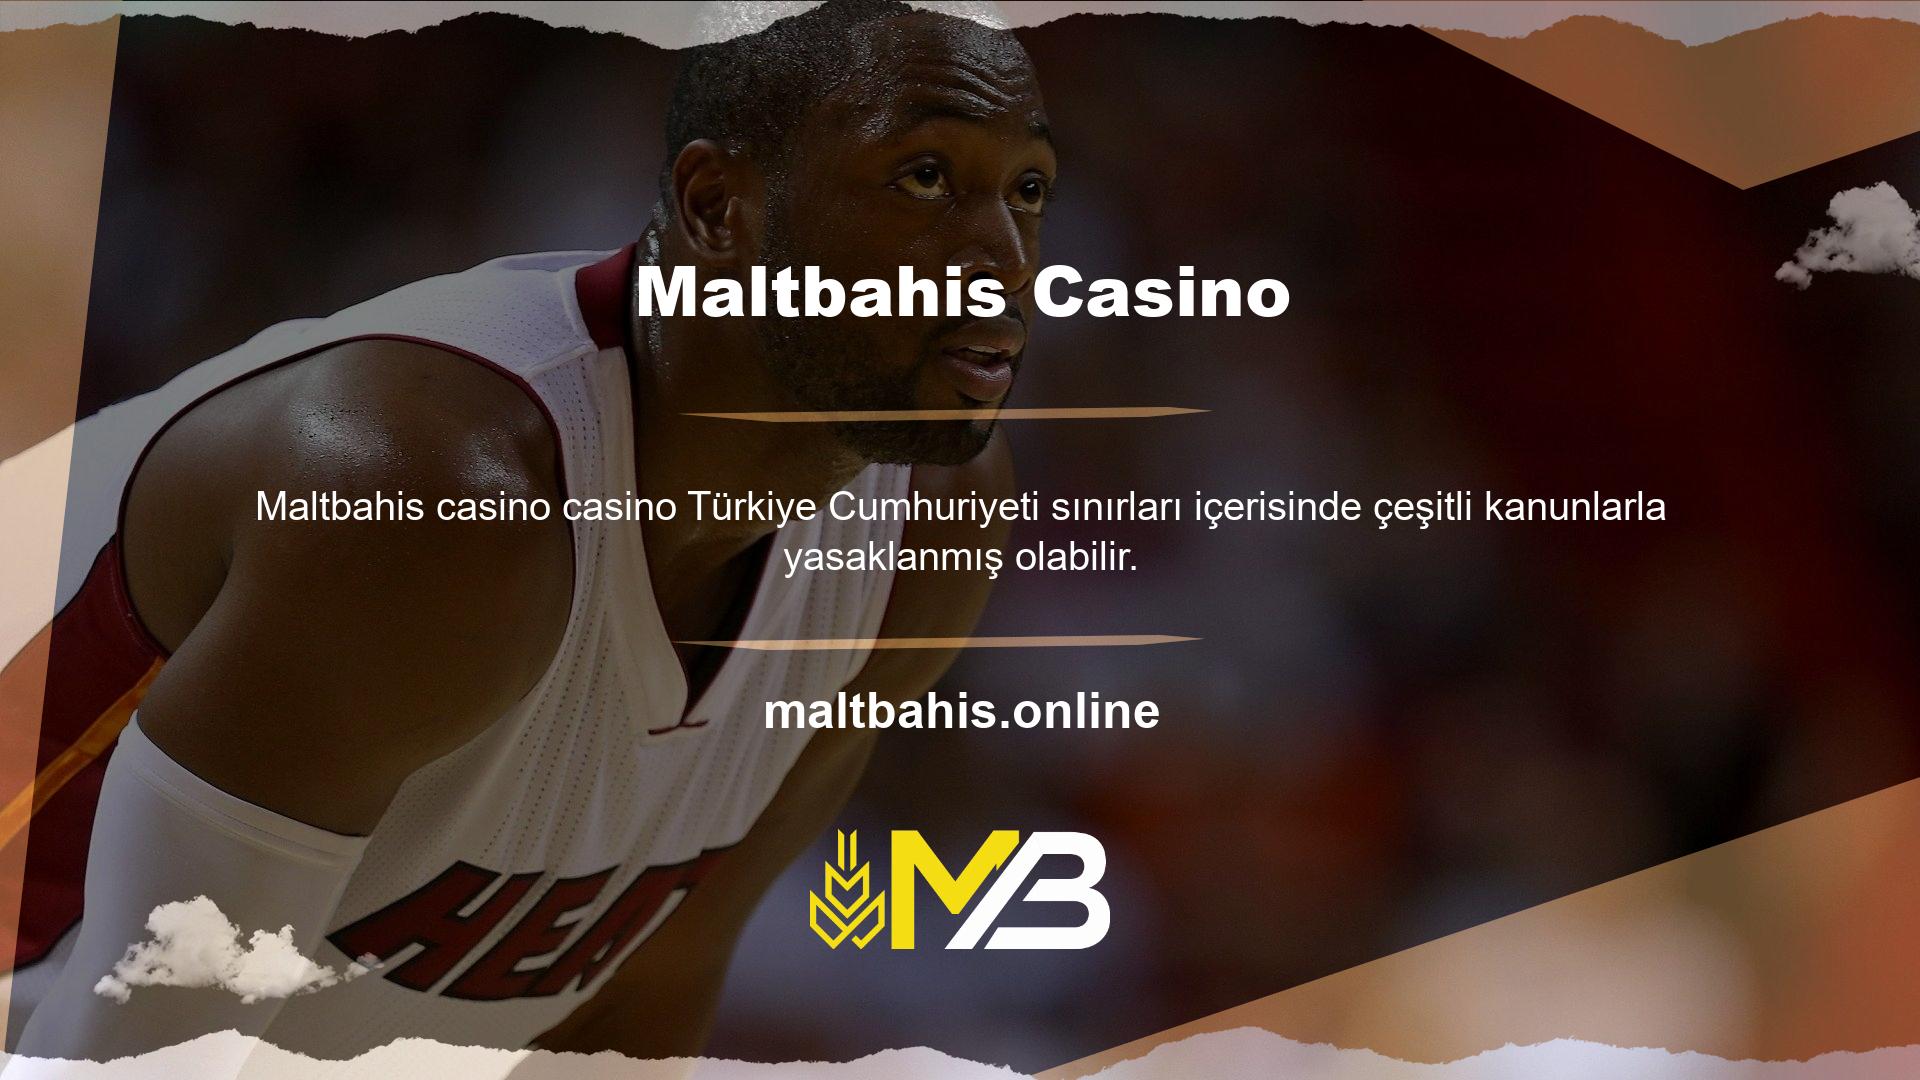 Tüm casino sitelerinde olduğu gibi Maltbahis casino oynamak bu yasalardan dolayı BTK'nın başarısız olmasına neden olabilir